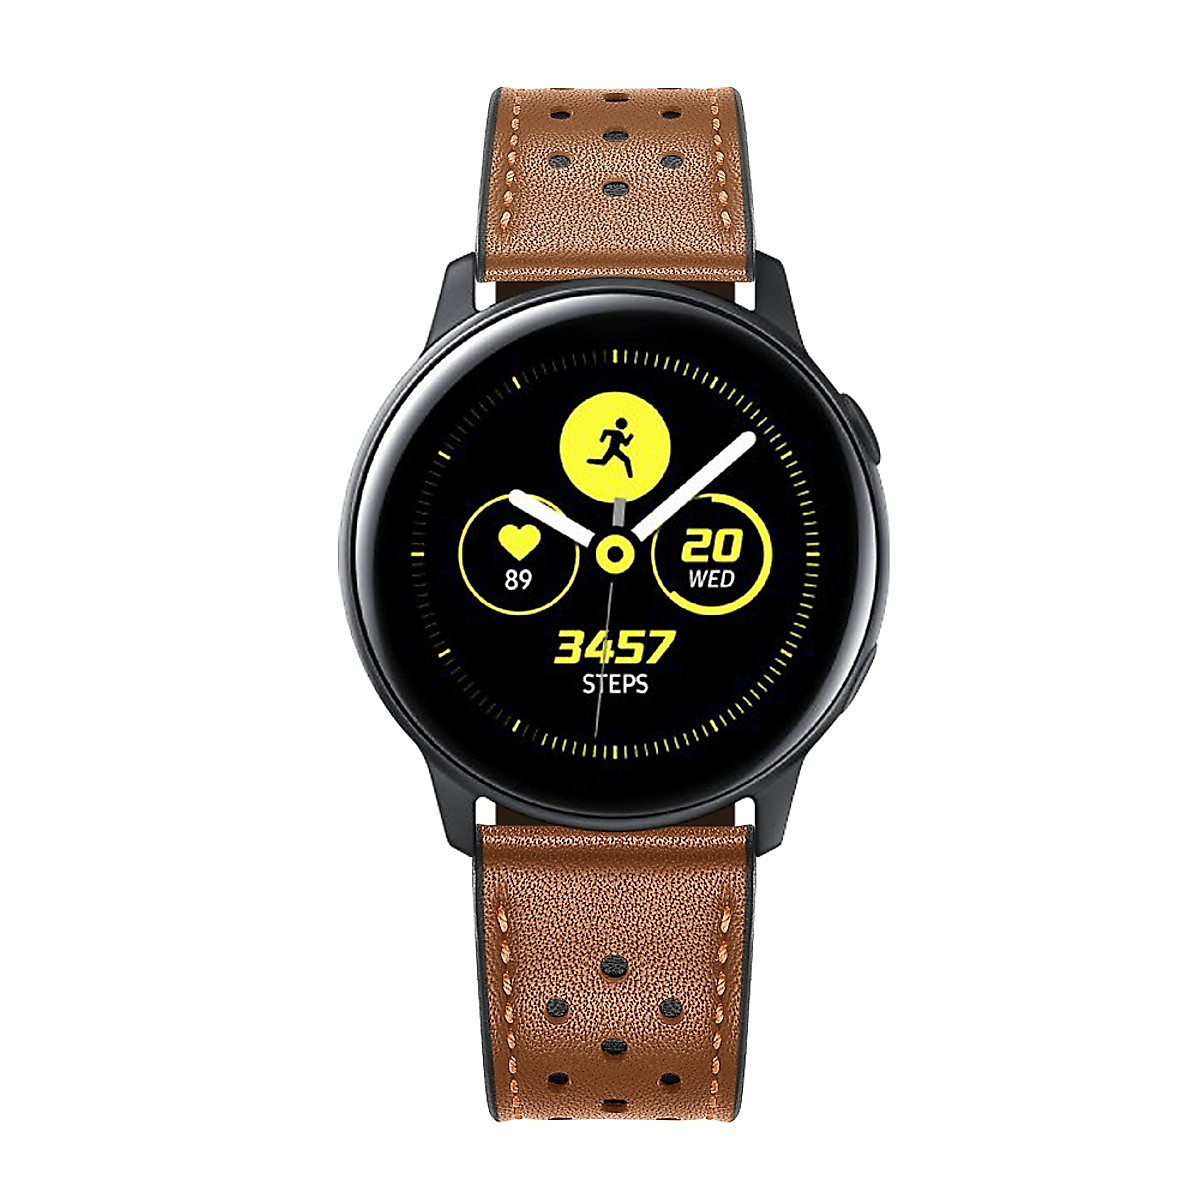 Dây Da Sport Leather Dành Cho Galaxy Watch 46, Huawei GT2, Huawei GT, Gear S3 (Size 22mm)